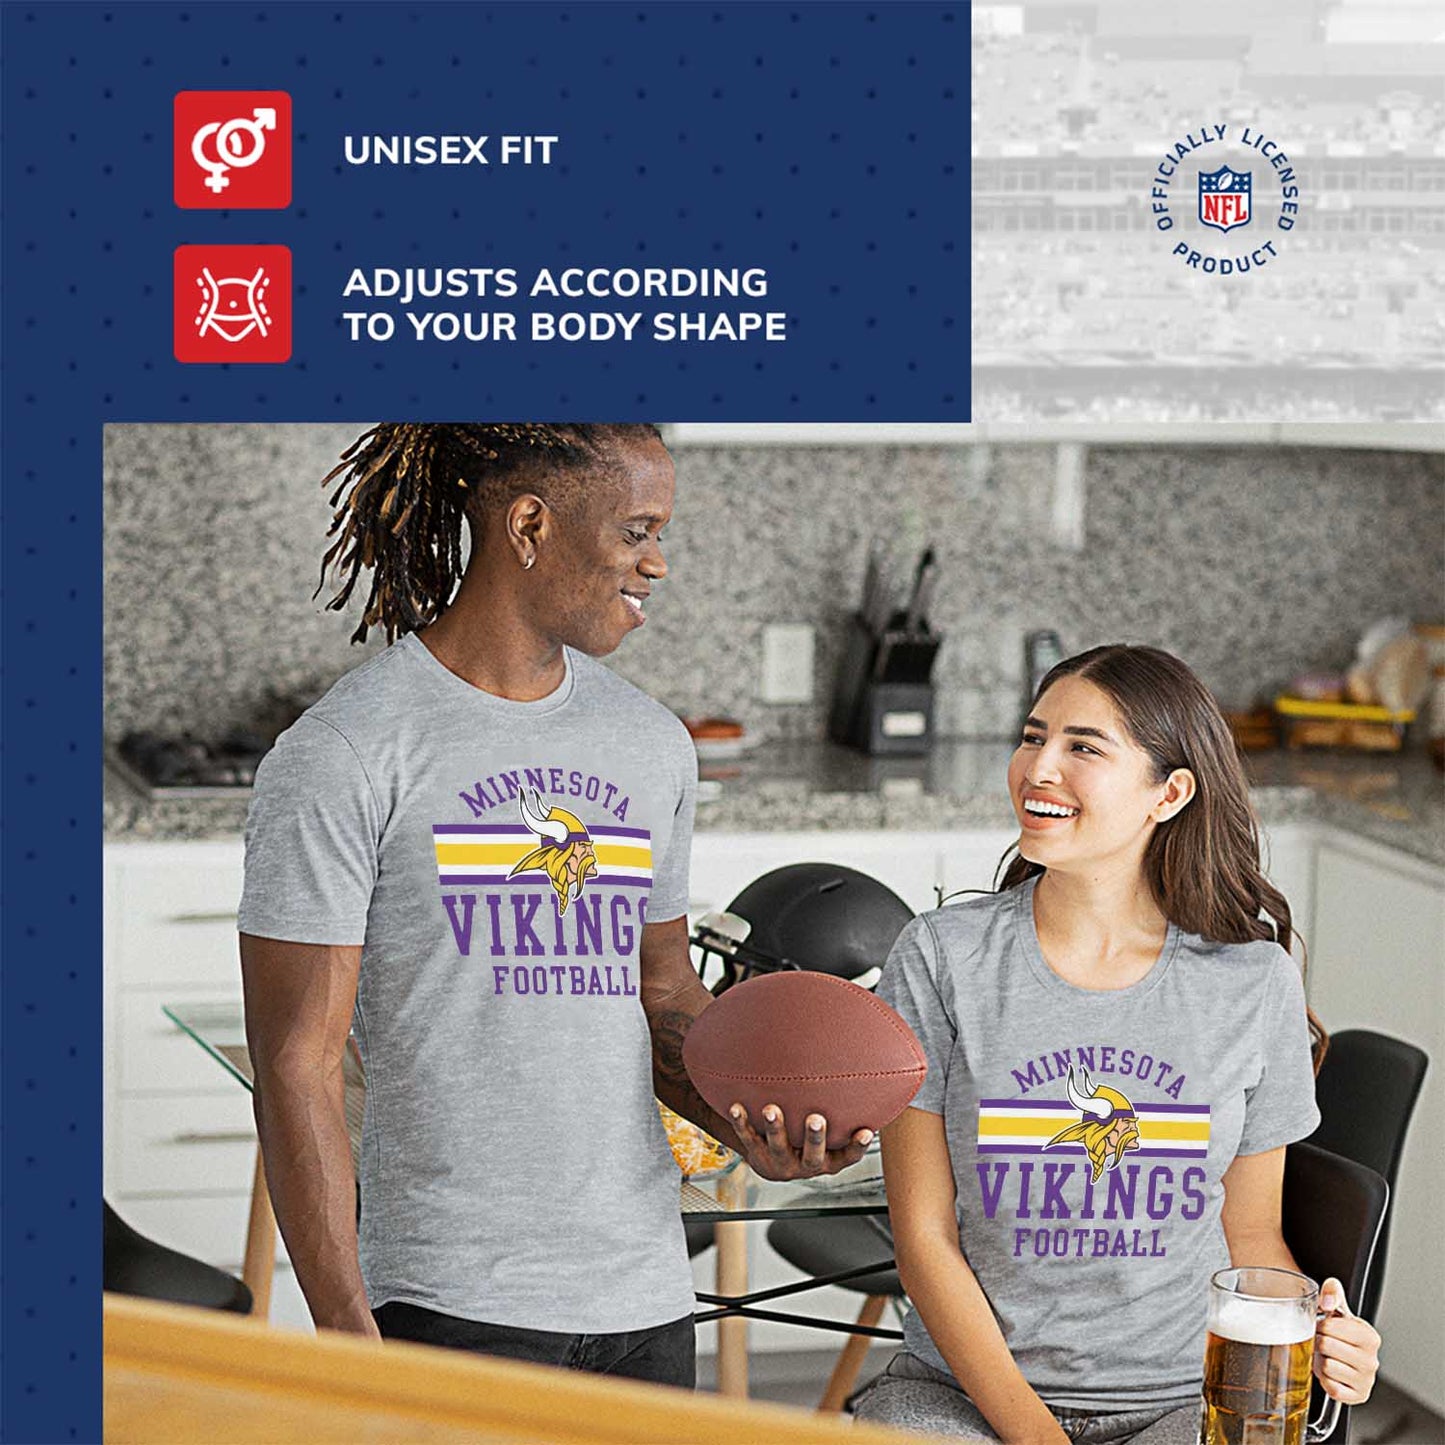 Minnesota Vikings NFL Adult Short Sleeve Team Stripe Tee - Sport Gray